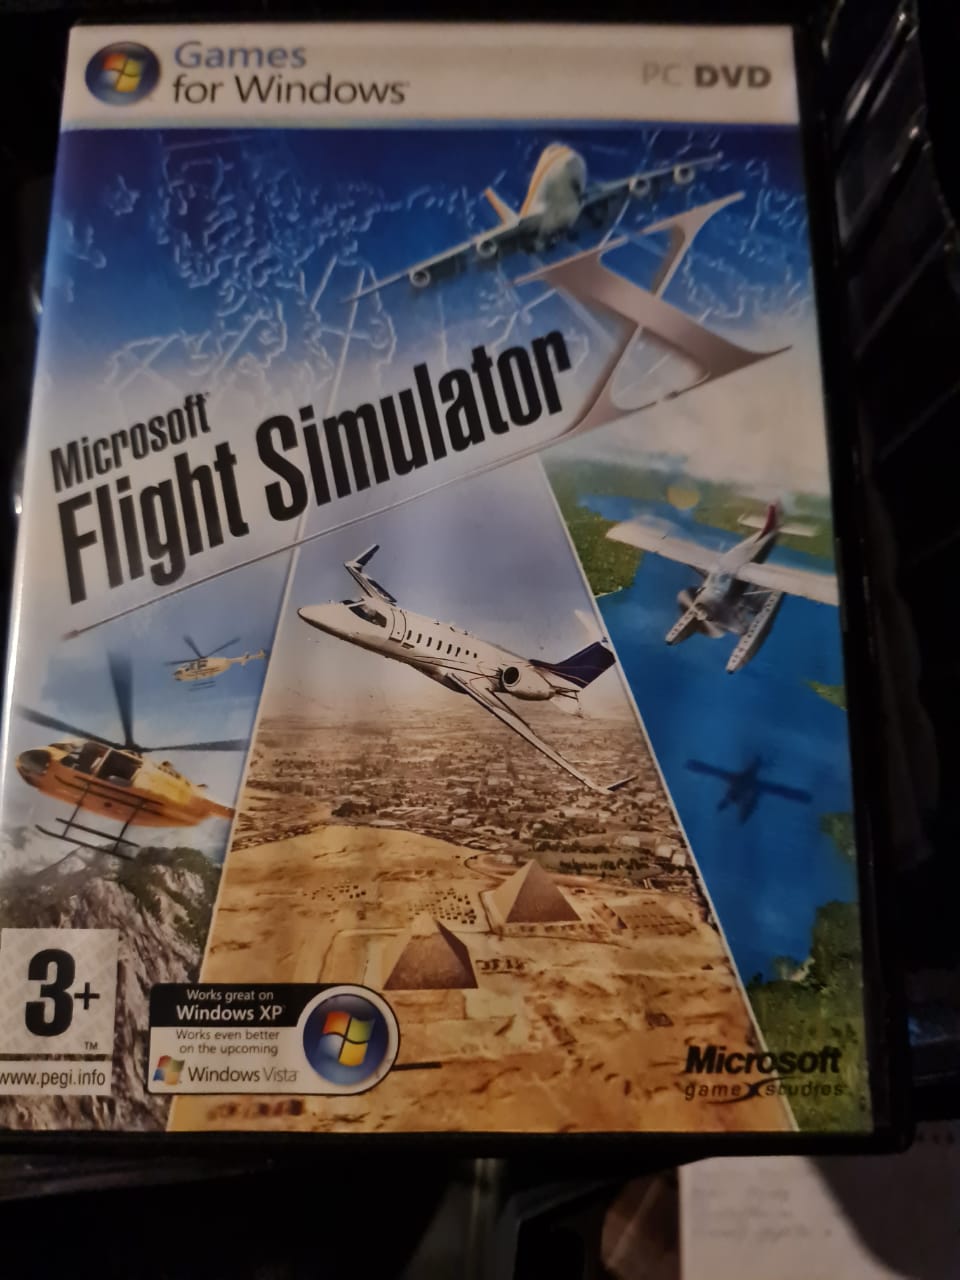 FSX vs Microsoft Flight Simulator comparison video shows upgrades